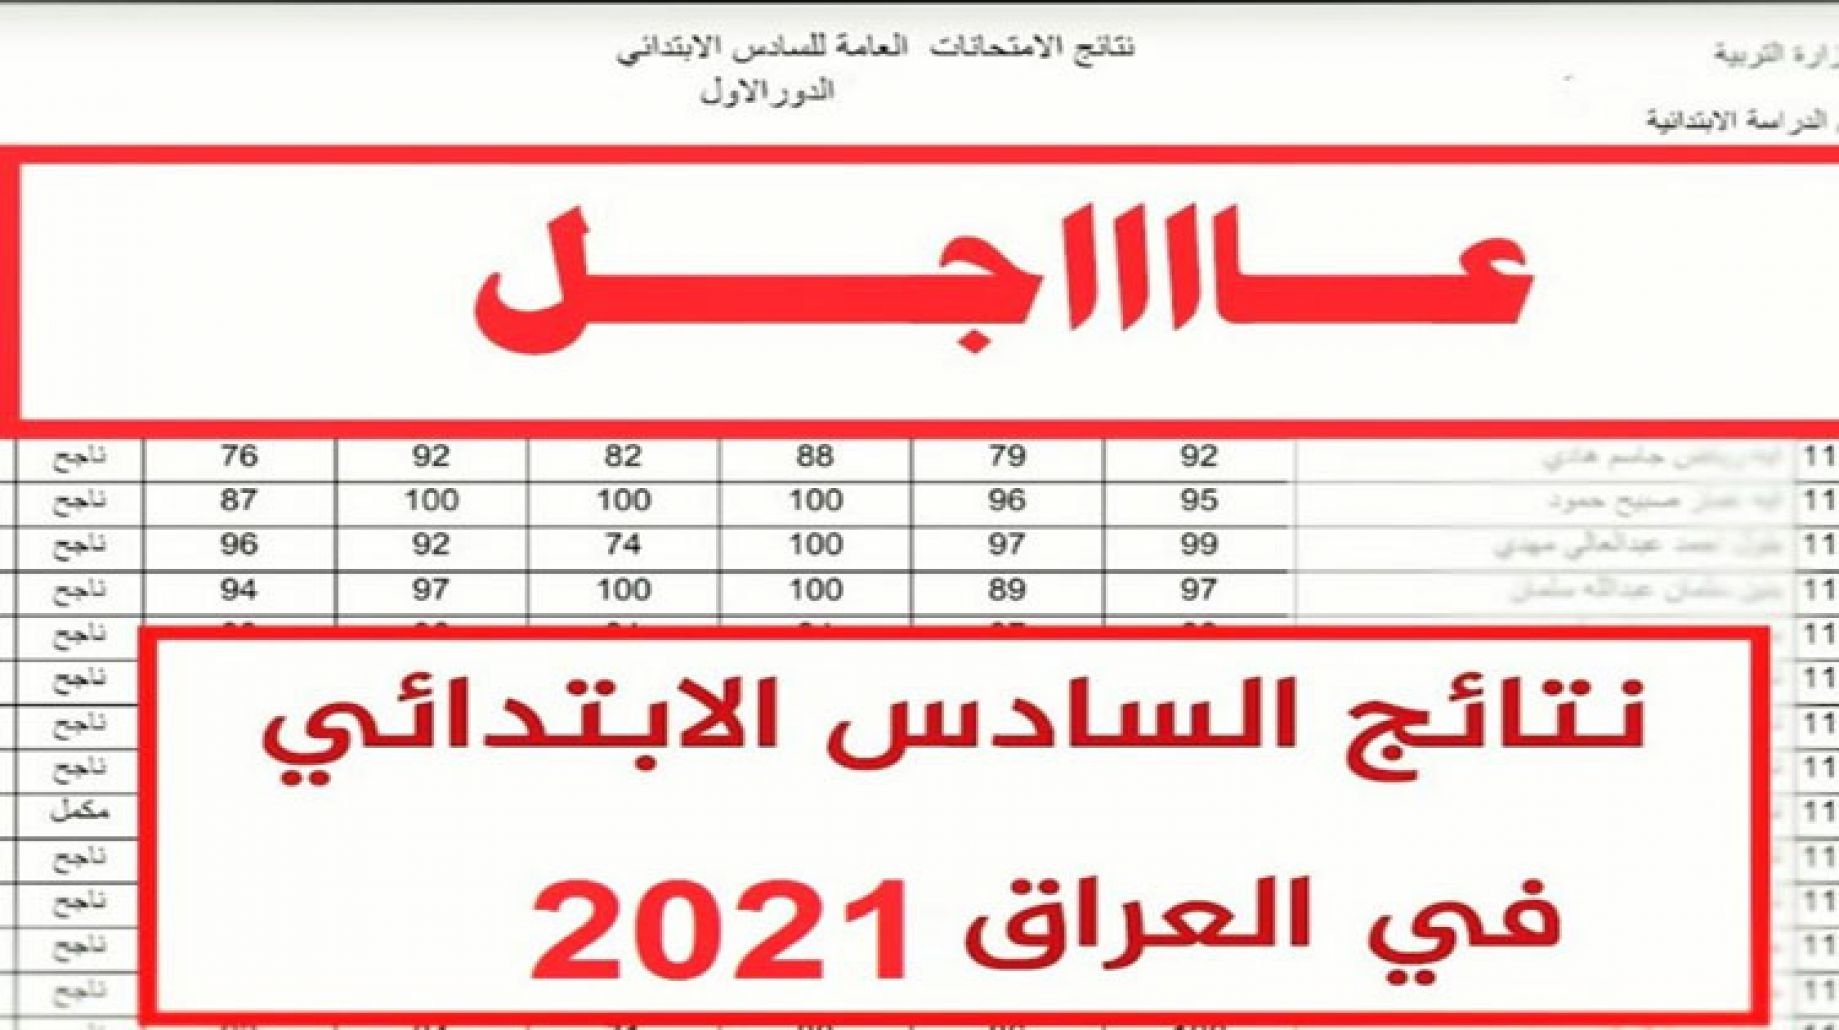 نتائج السادس الابتدائي 2021 العراق ظهرت الان من خلال موقع وزارة التربية والتعليم